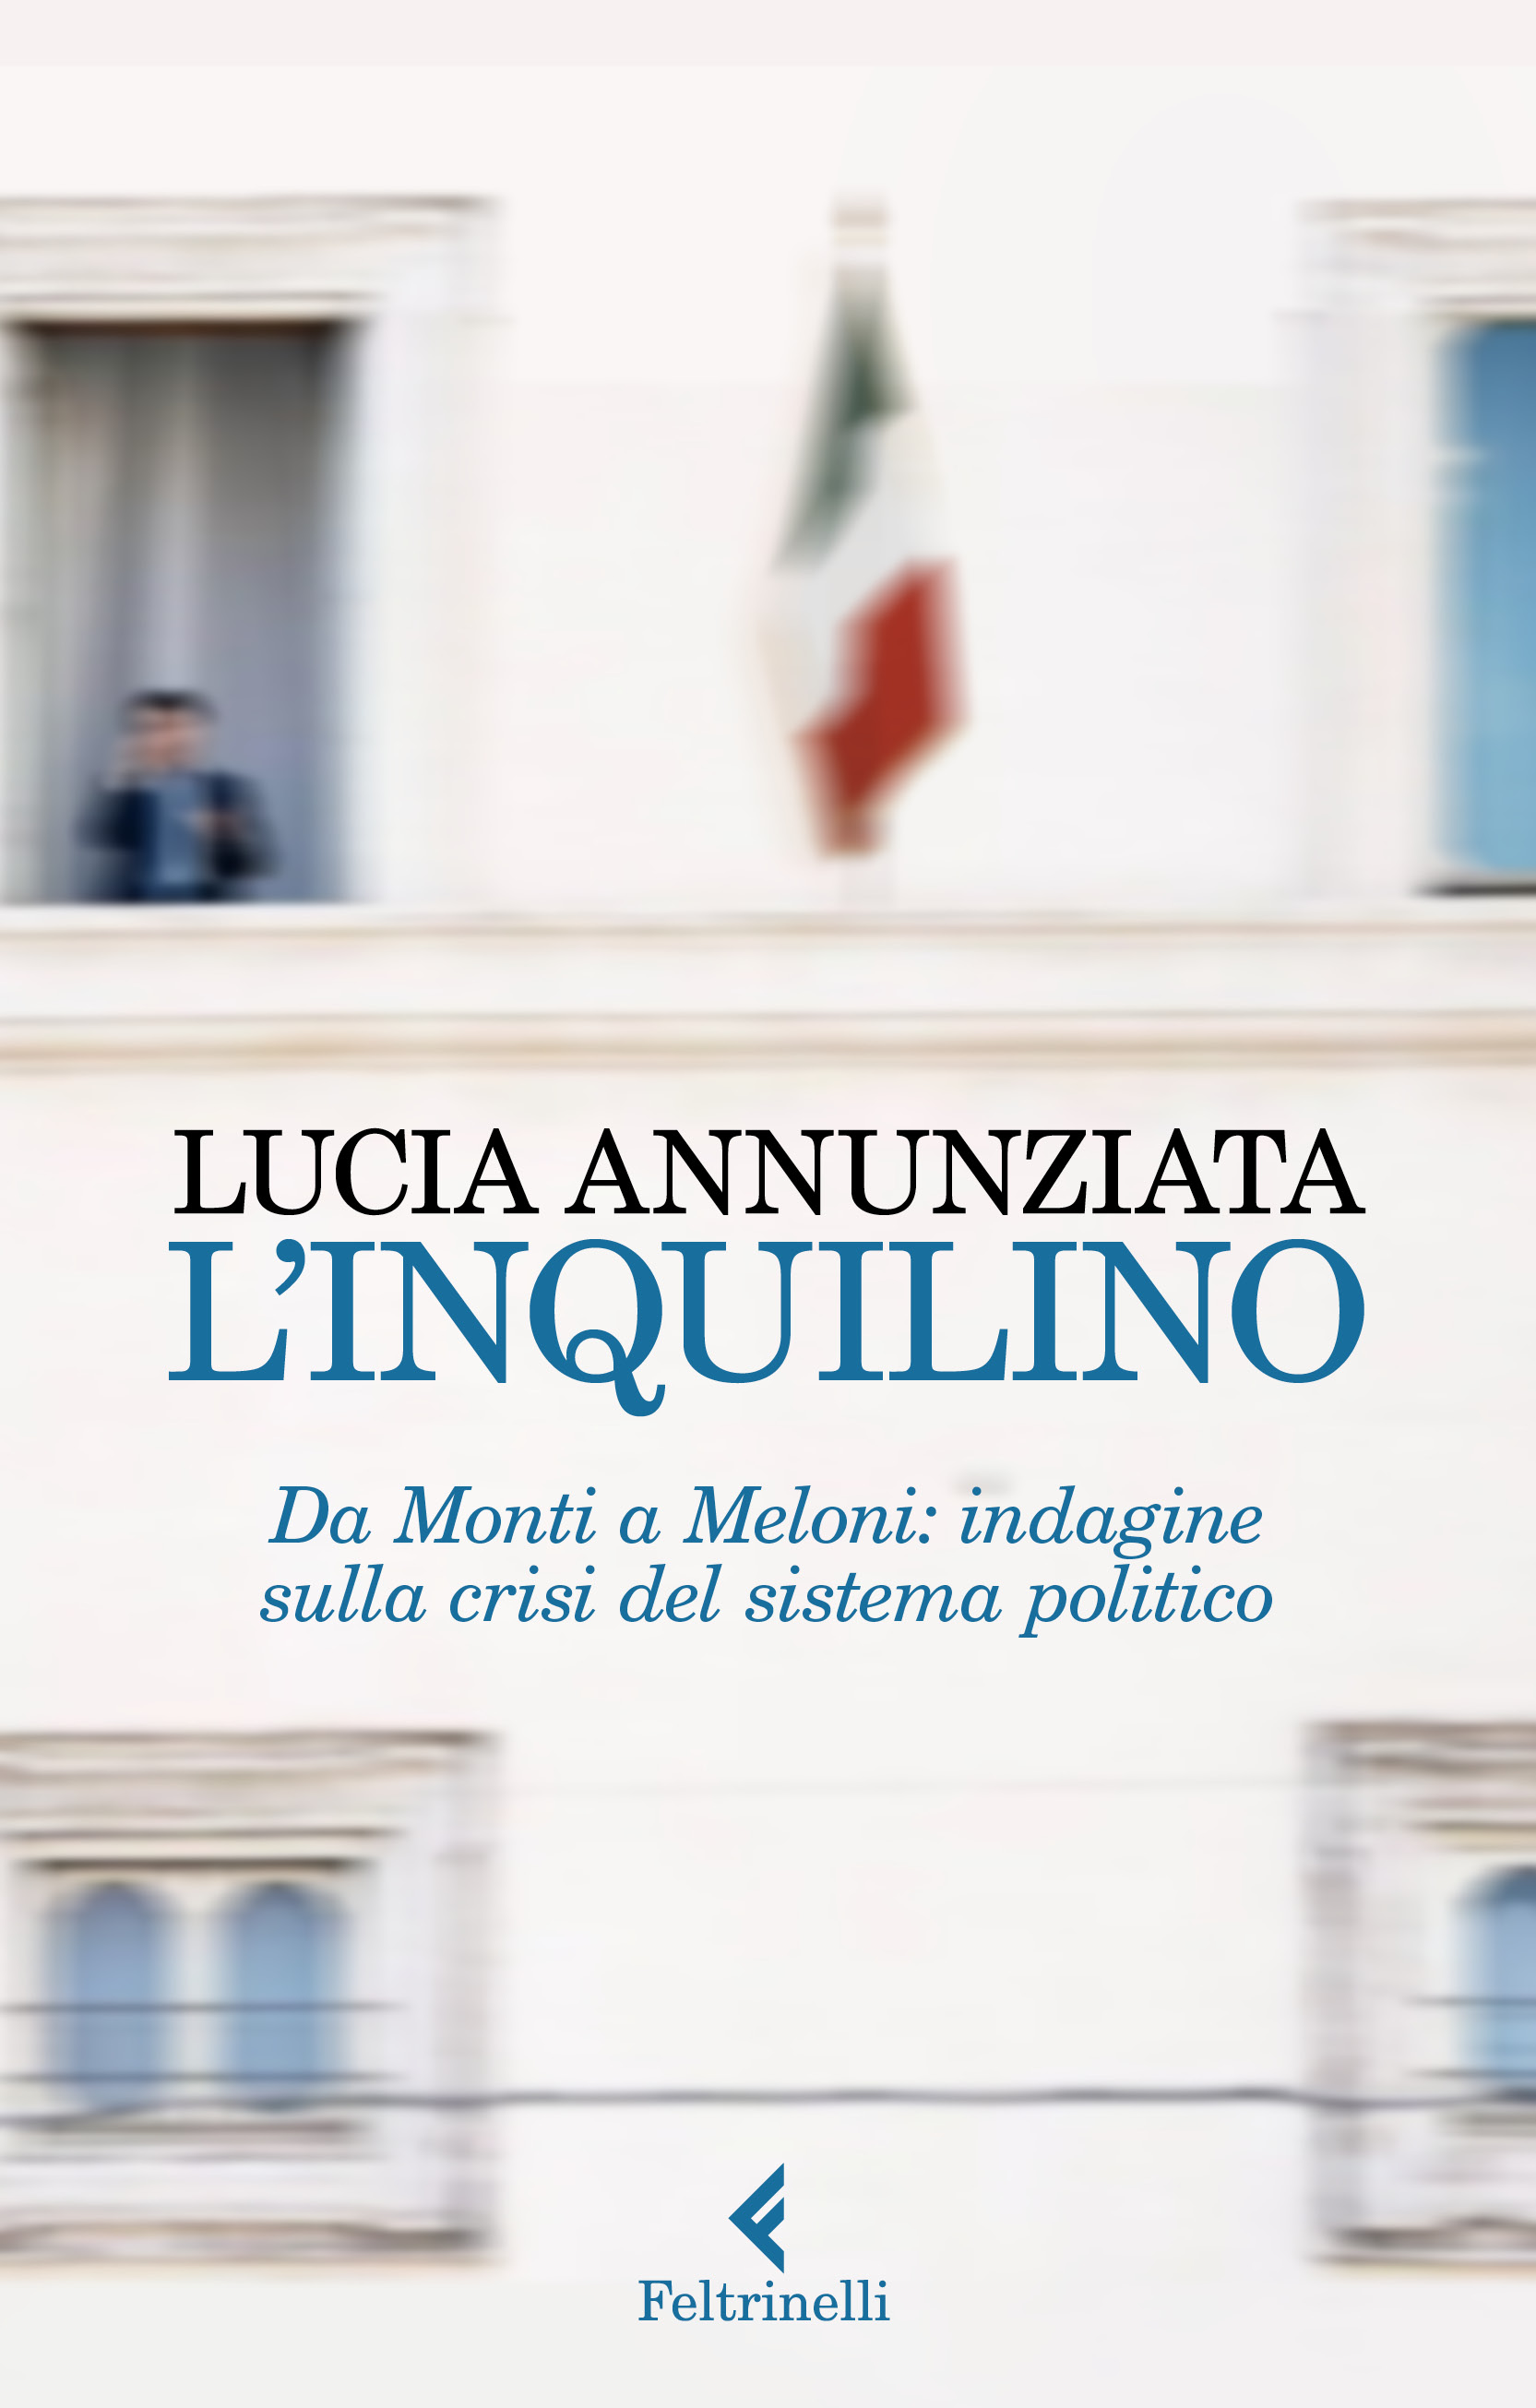 Galleria Il presidente Emiliano, giovedì 23 febbraio a Bari, presenta il nuovo libro di Lucia Annunziata - Diapositiva 1 di 1